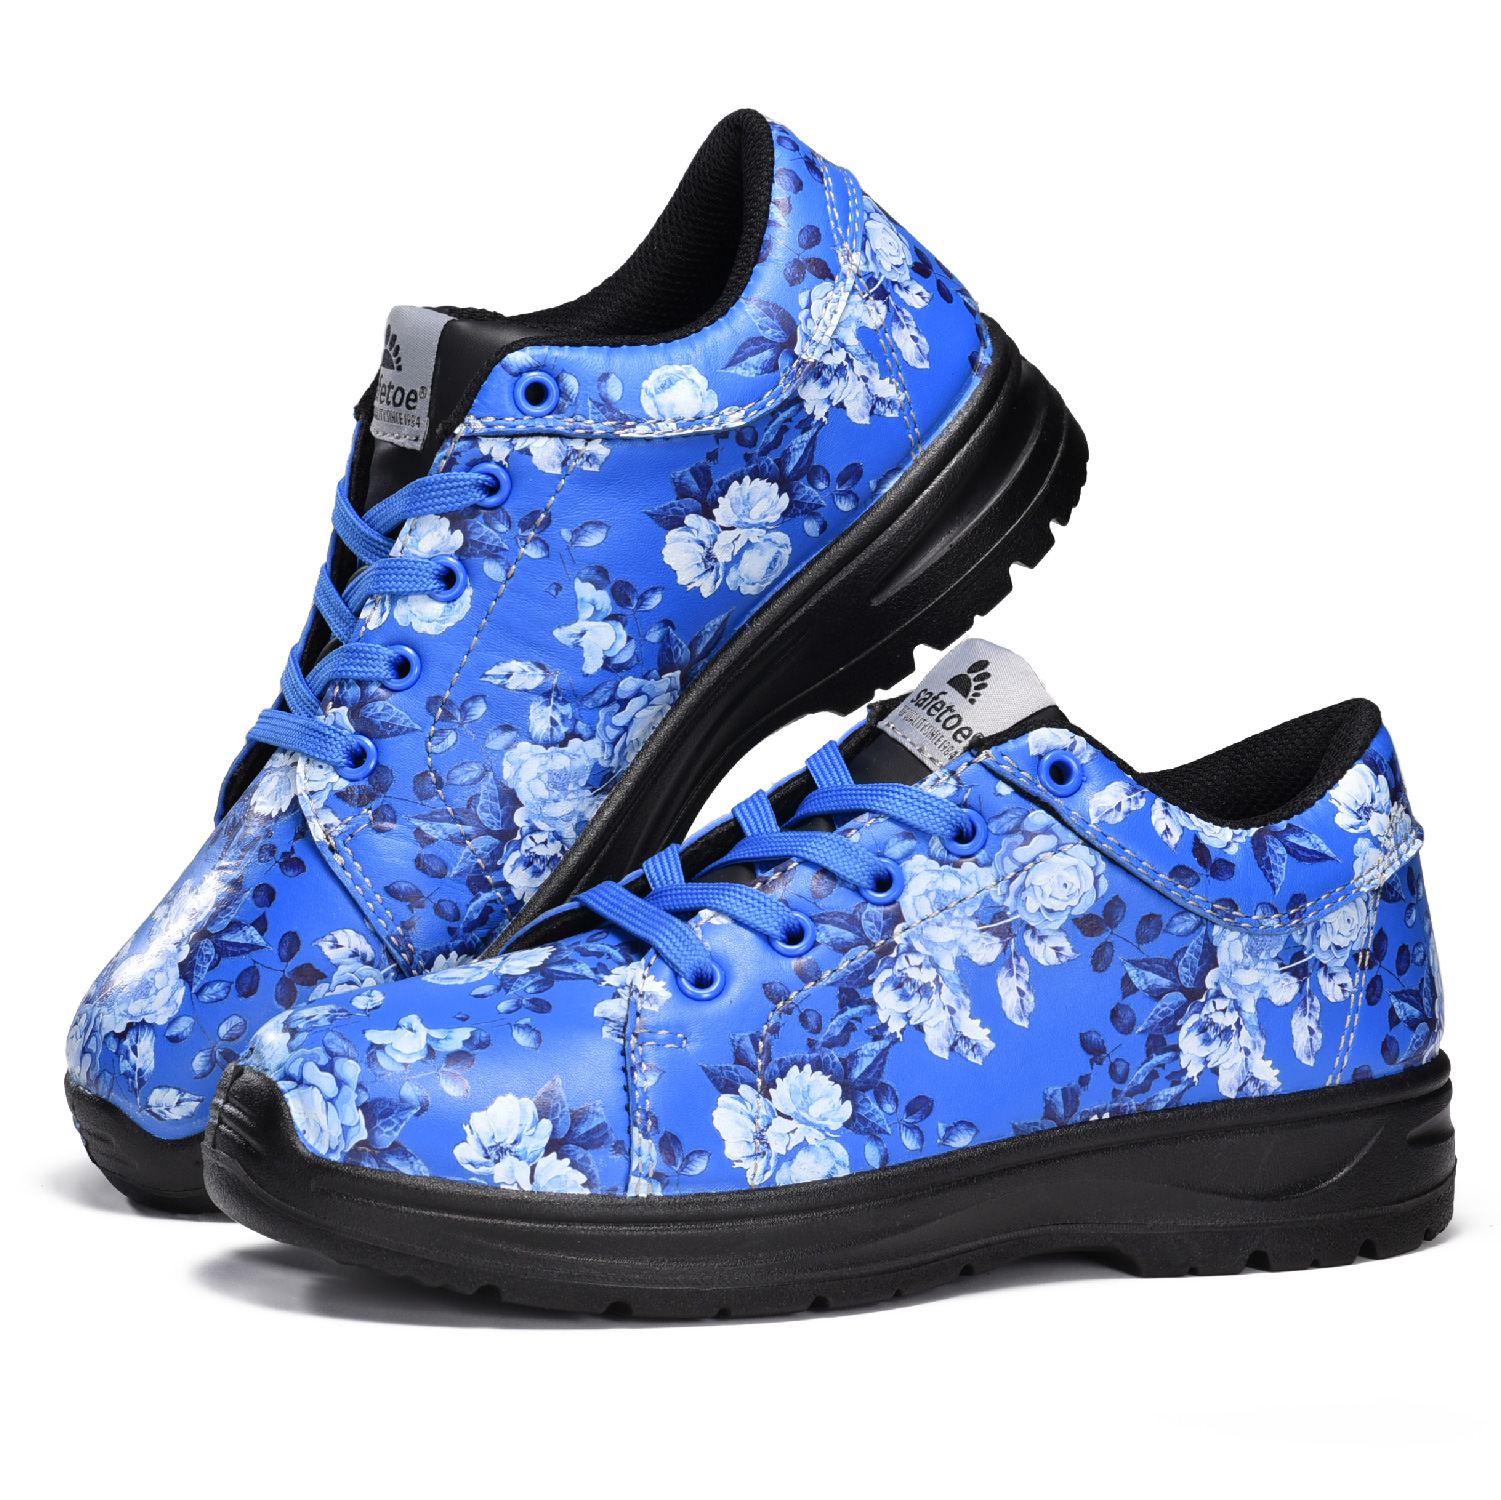 Garden Design Zapatos de Seguridad Impermeables con Punta de Acero para Mujer L-7526 Azul